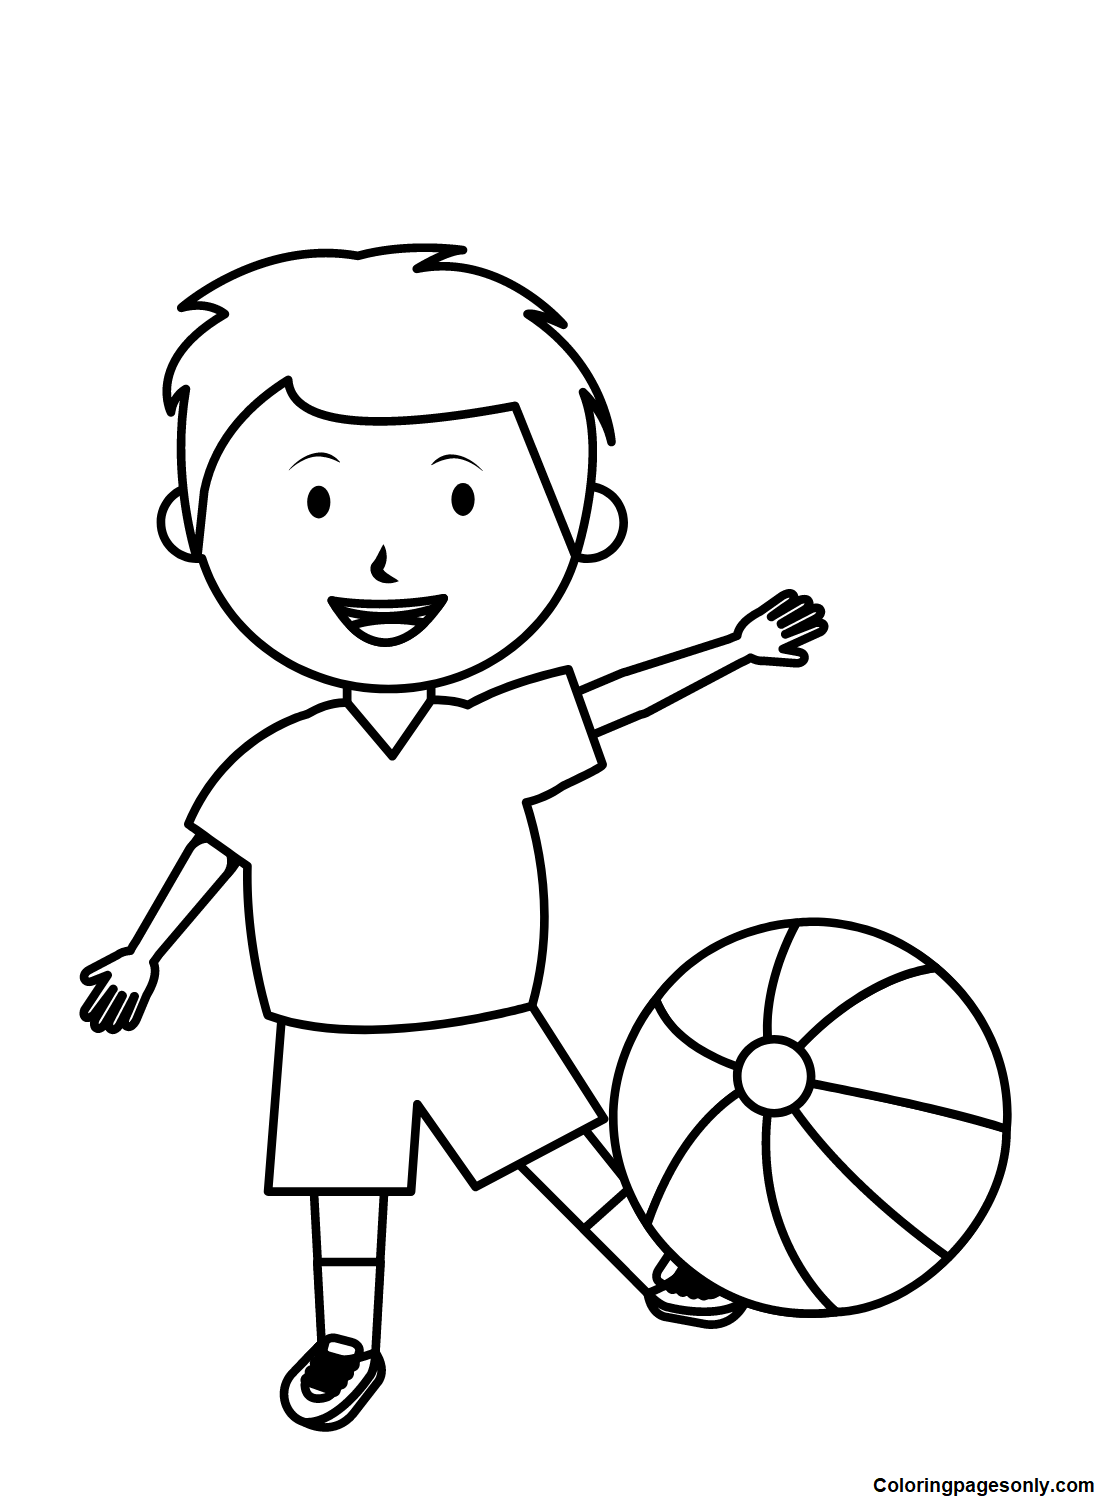 Маленький мальчик с воздушными шарами на пляже из «Мальчишеского»